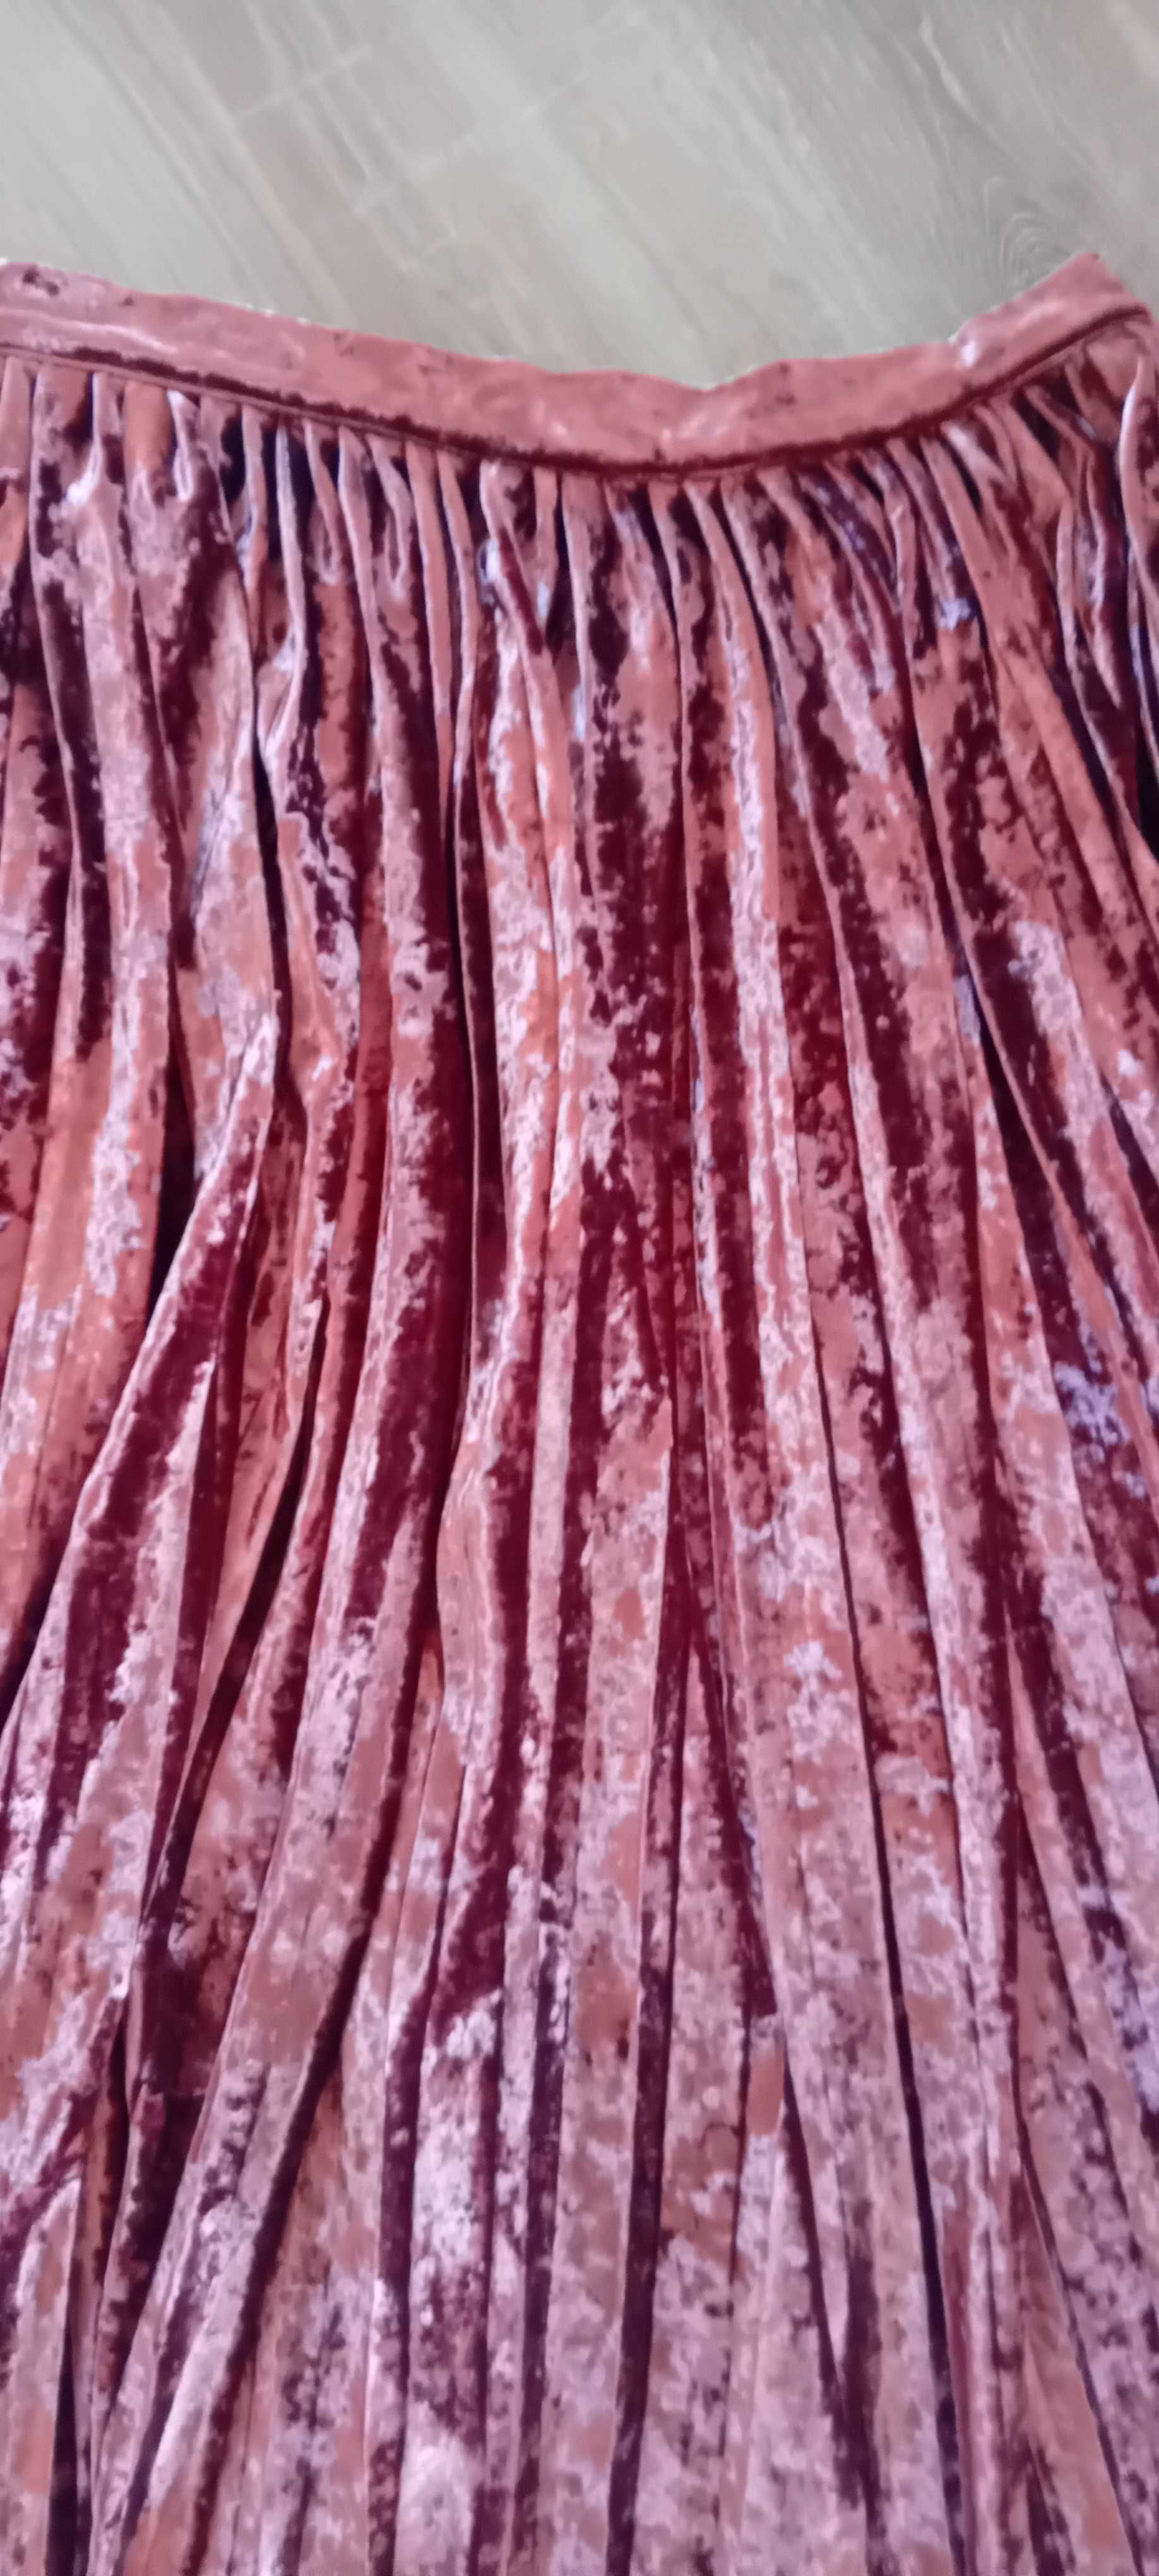 Spodnica plisowana 38 m miedziana welur plisy ceglasta jak nowa midi